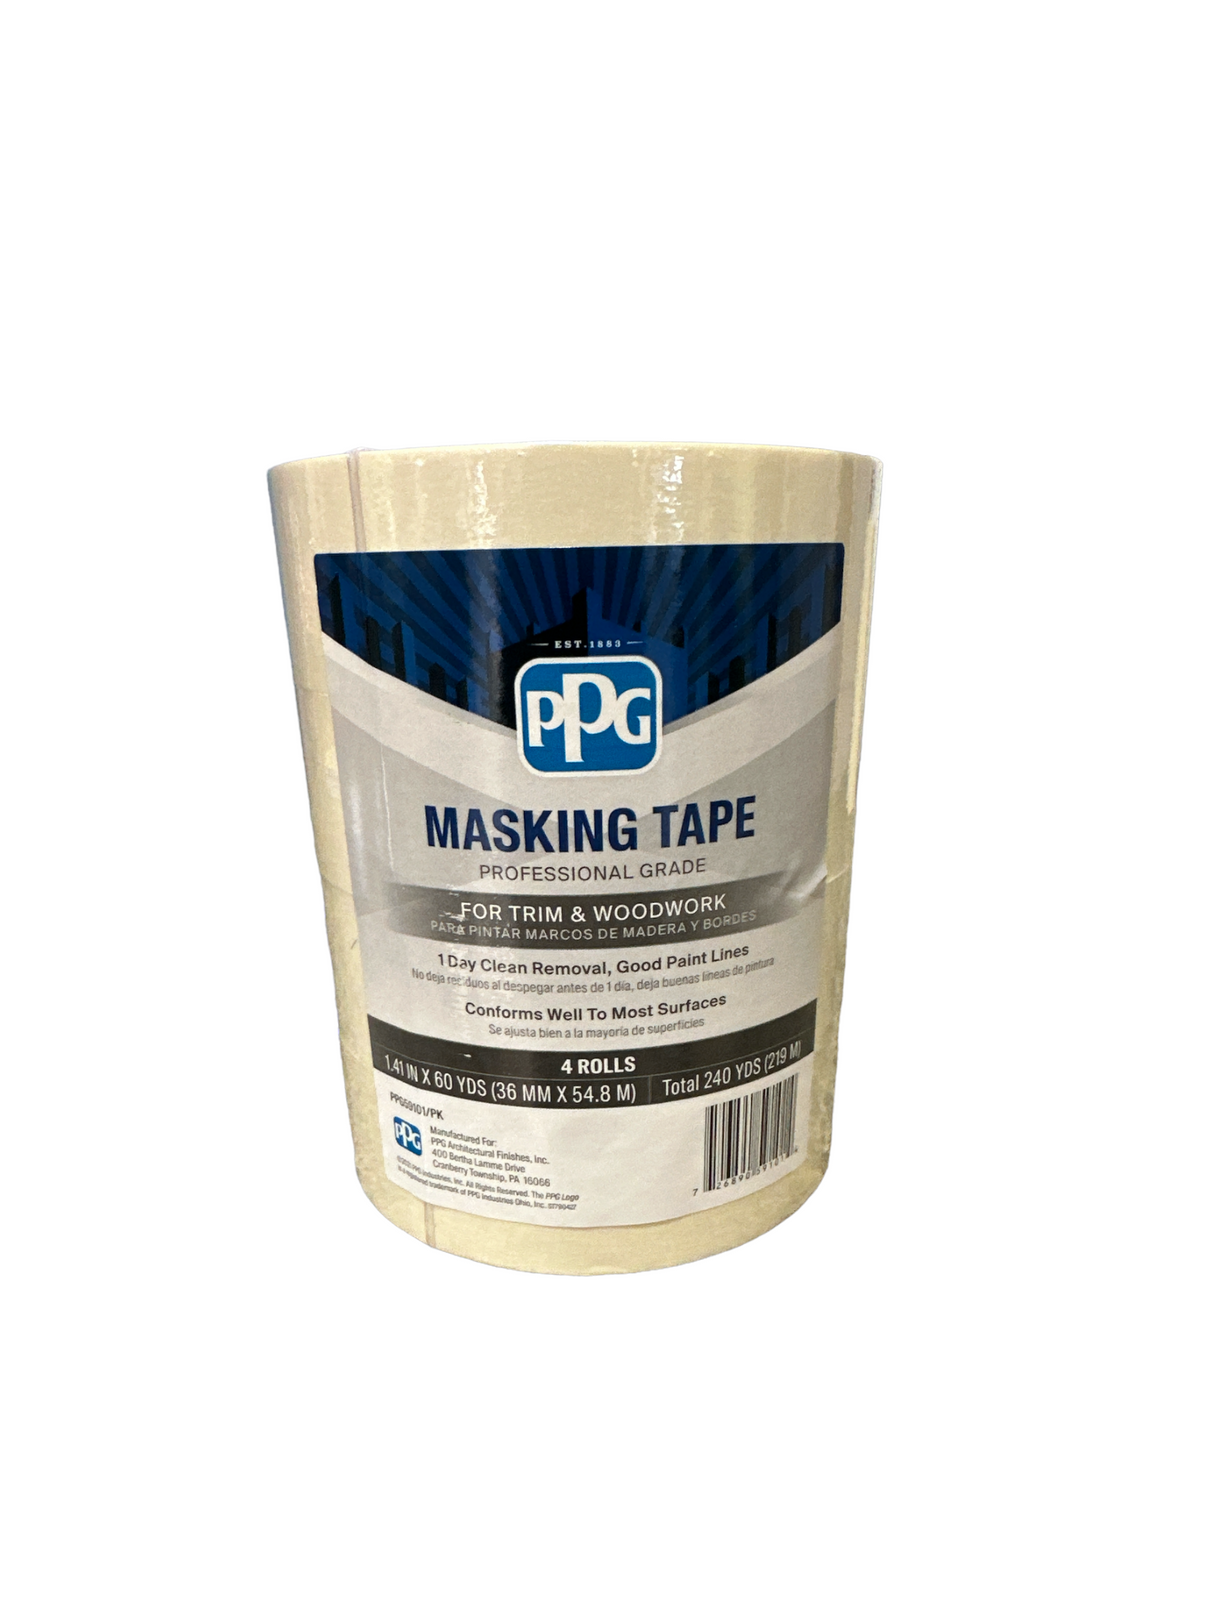 Shurtape General Purpose 2 x 60 Yards Masking Tape Roll